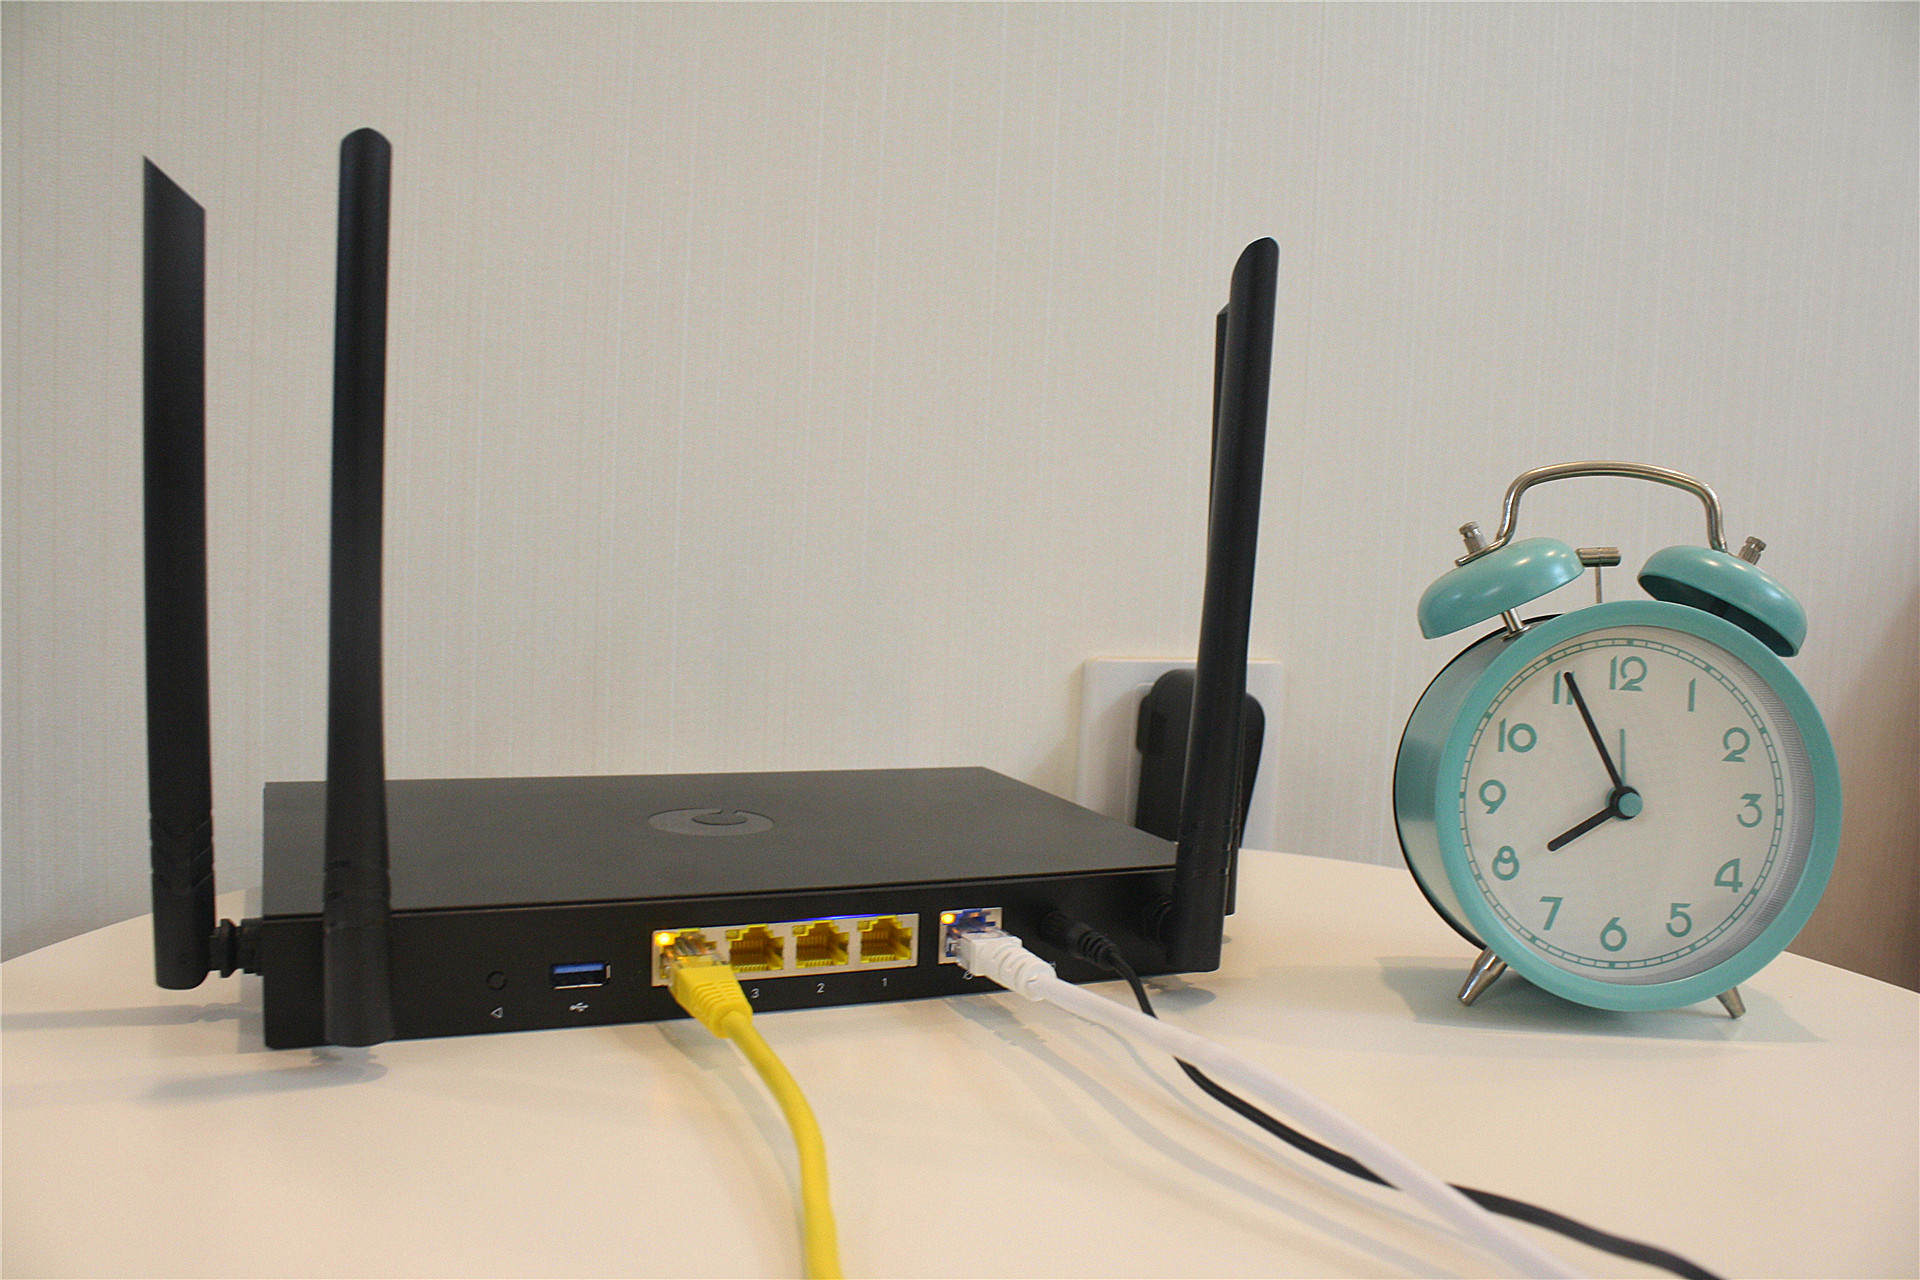 支持WiFi6的工业级路由器厉害了！蒲公英X5智能组网路由器评测